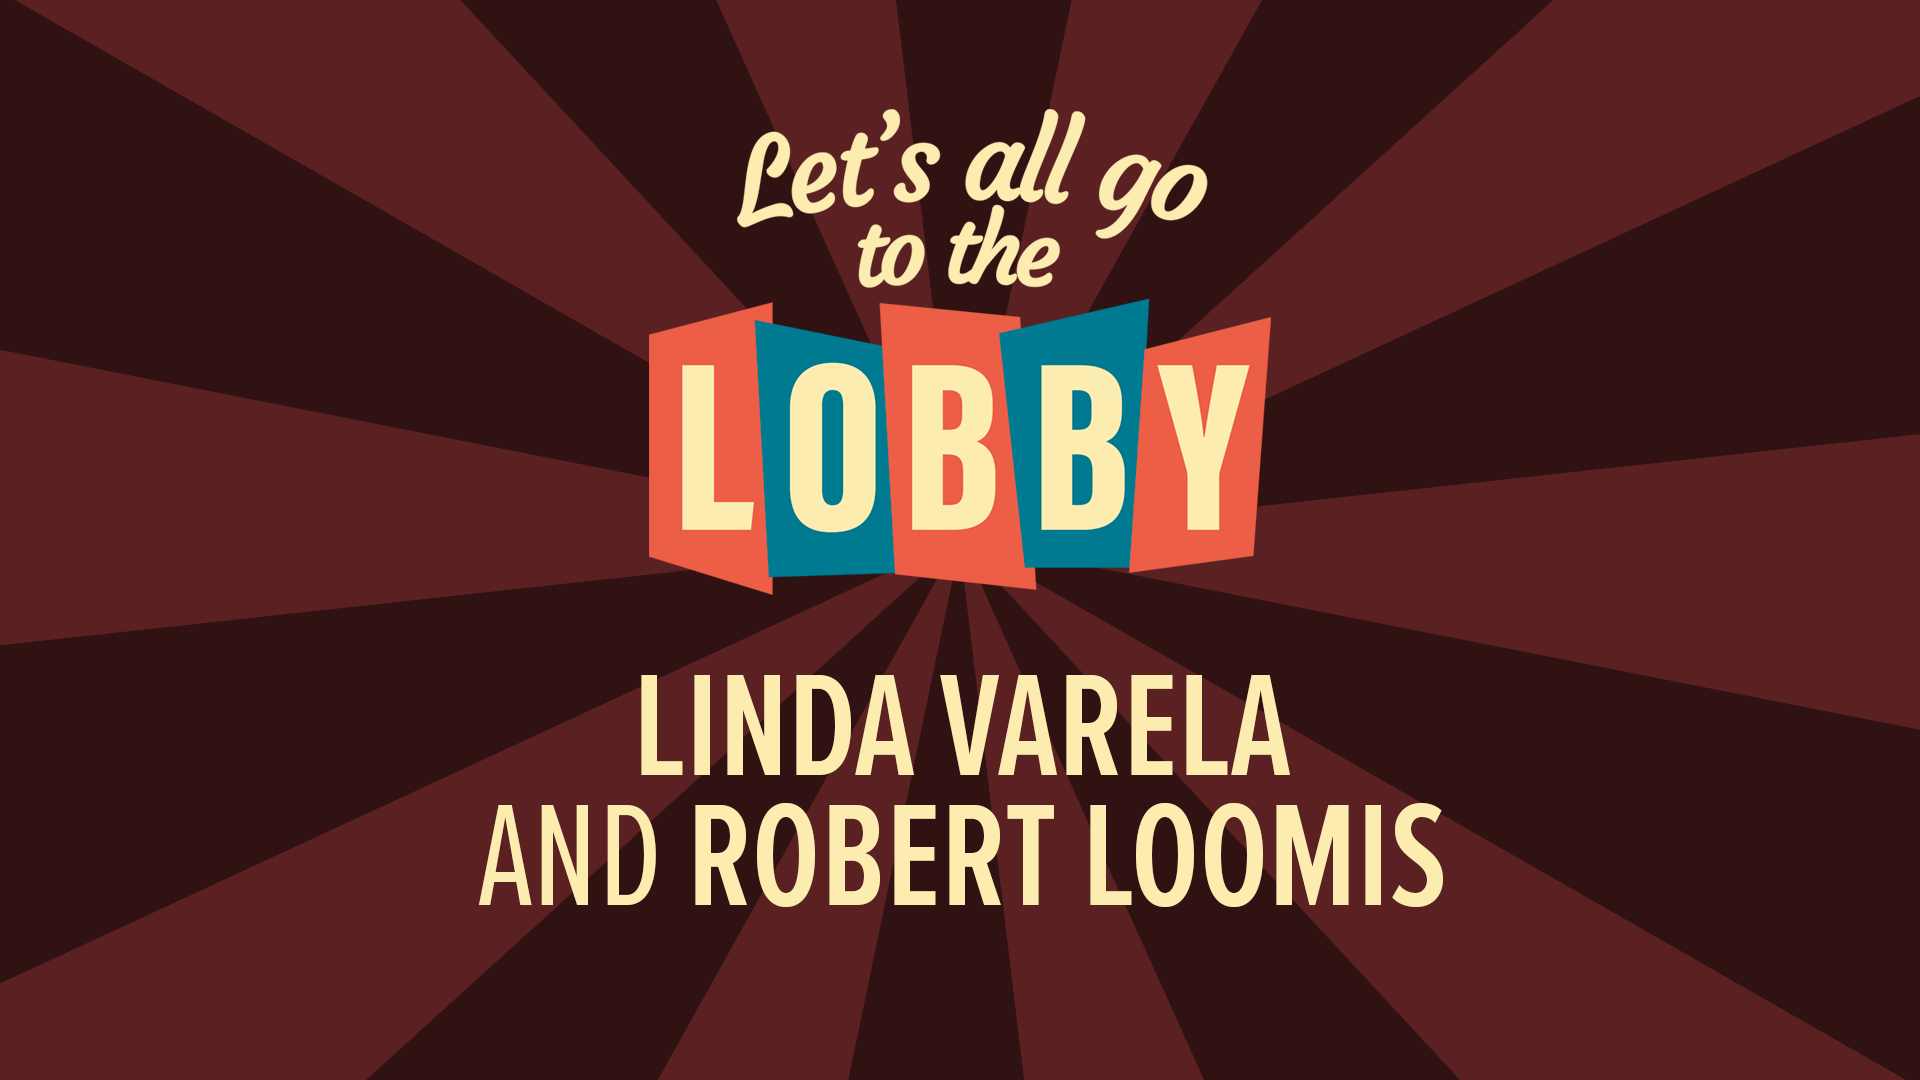 Linda Varela and Robert Loomis